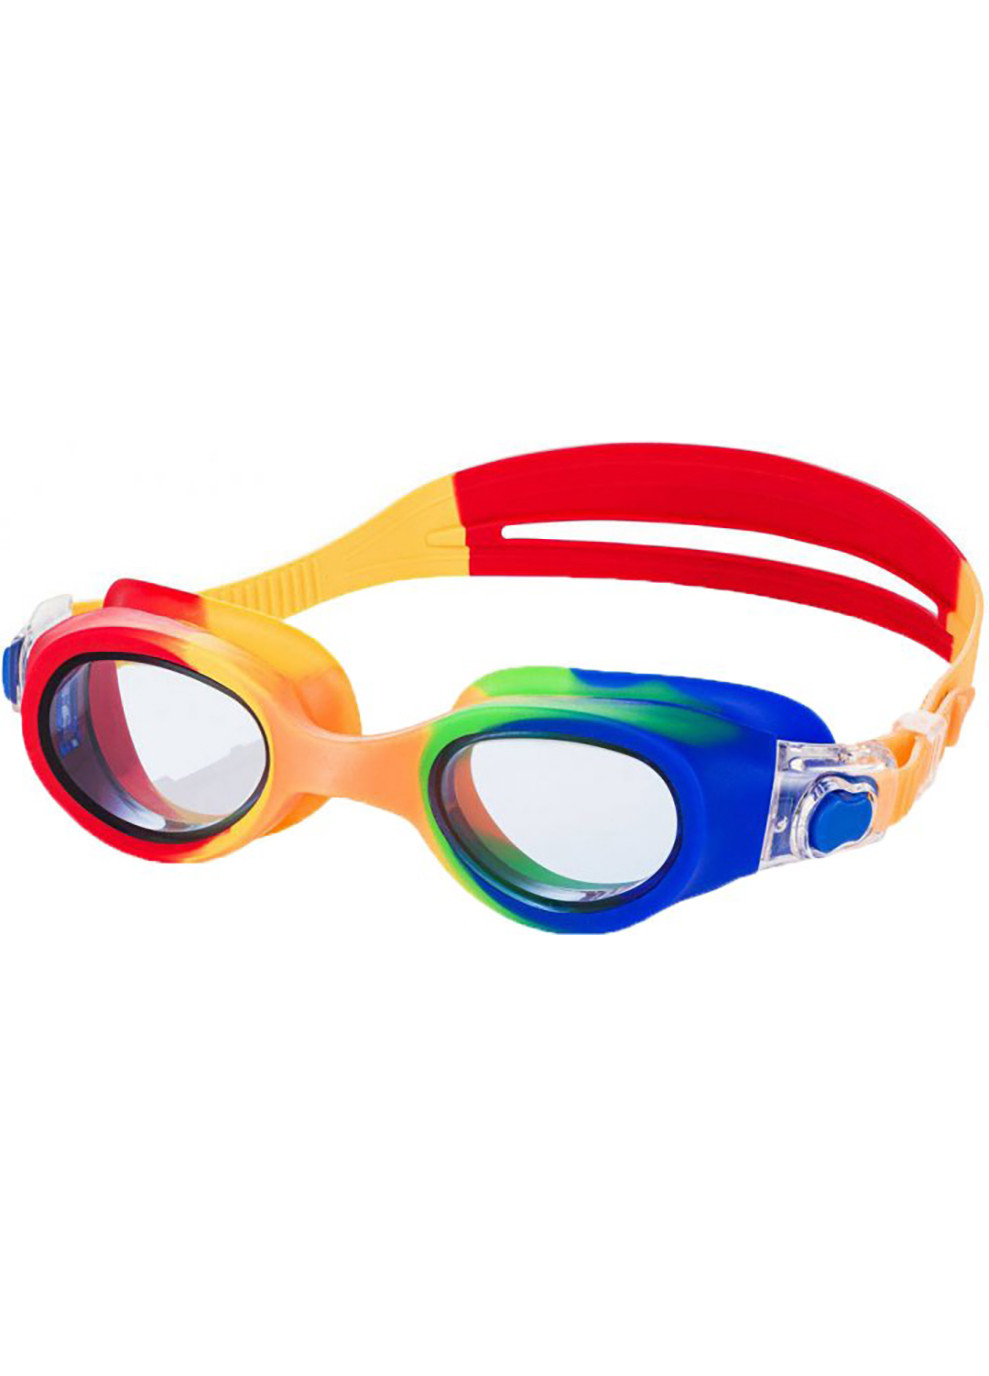 Окуляри для плавання Aquaspeed PEGAZ жовто-червоно-сині OSFM 209-30 Aqua Speed (259215187)